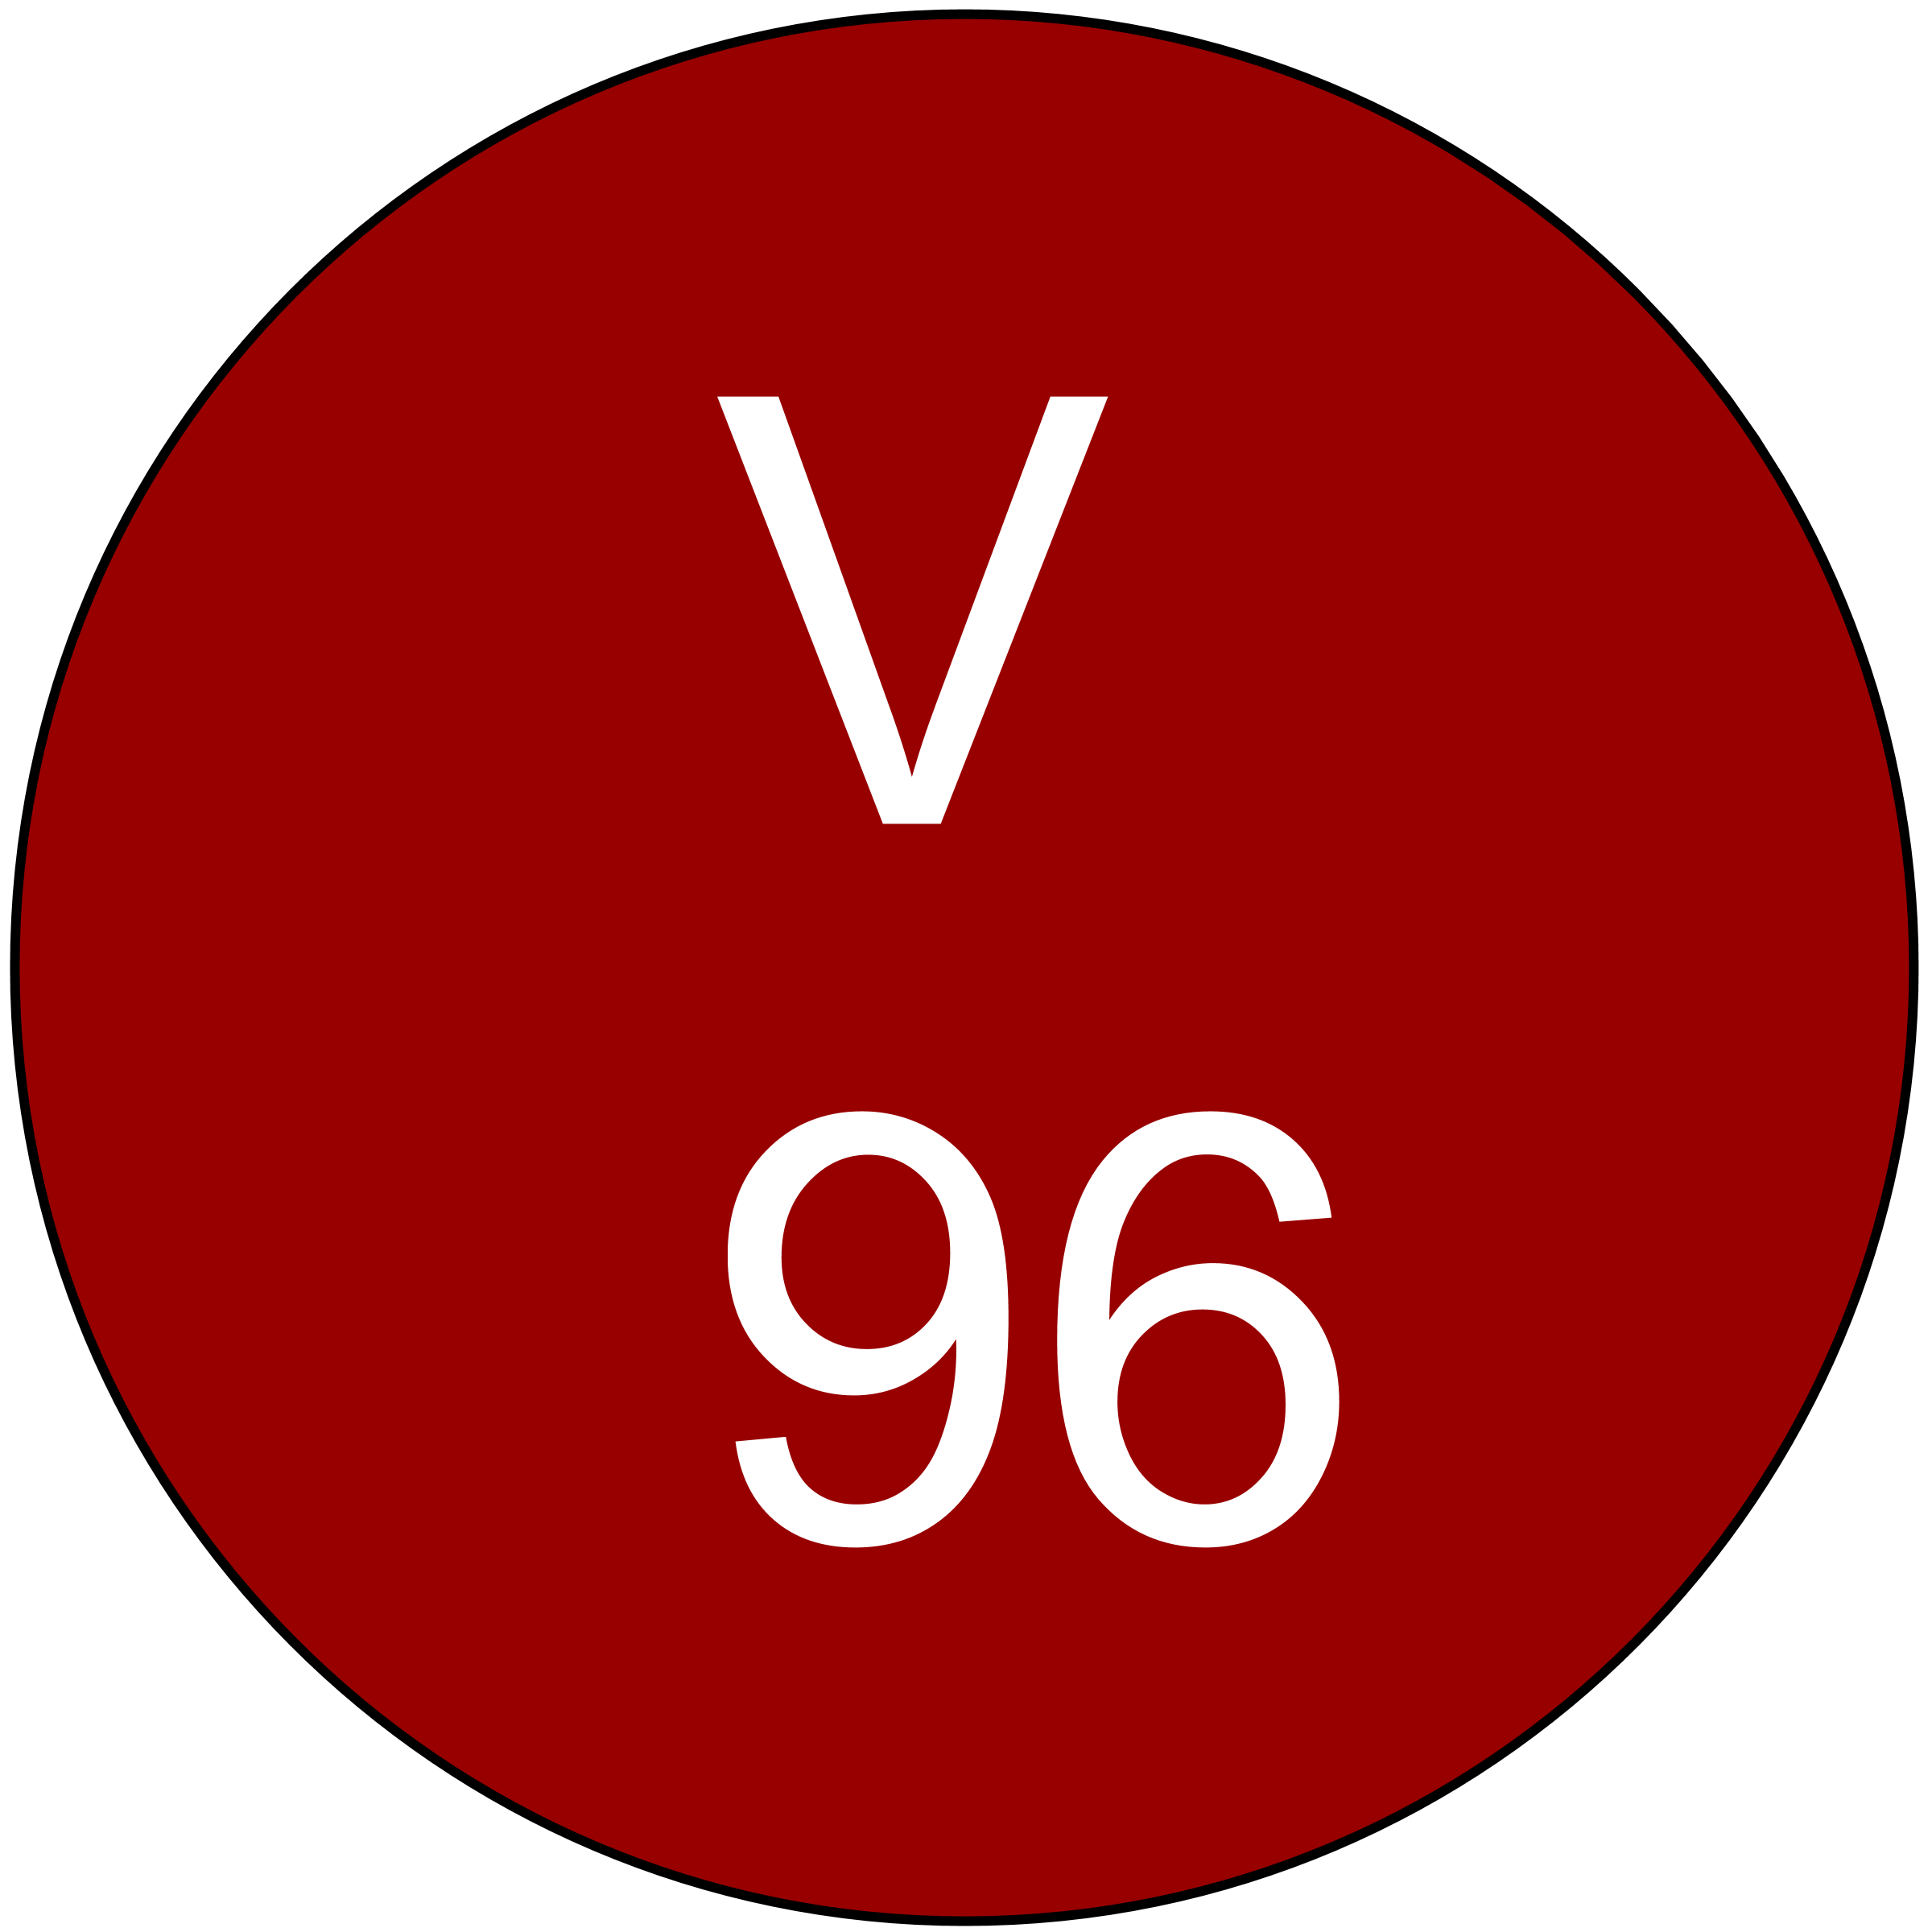 vinous-96-ratings